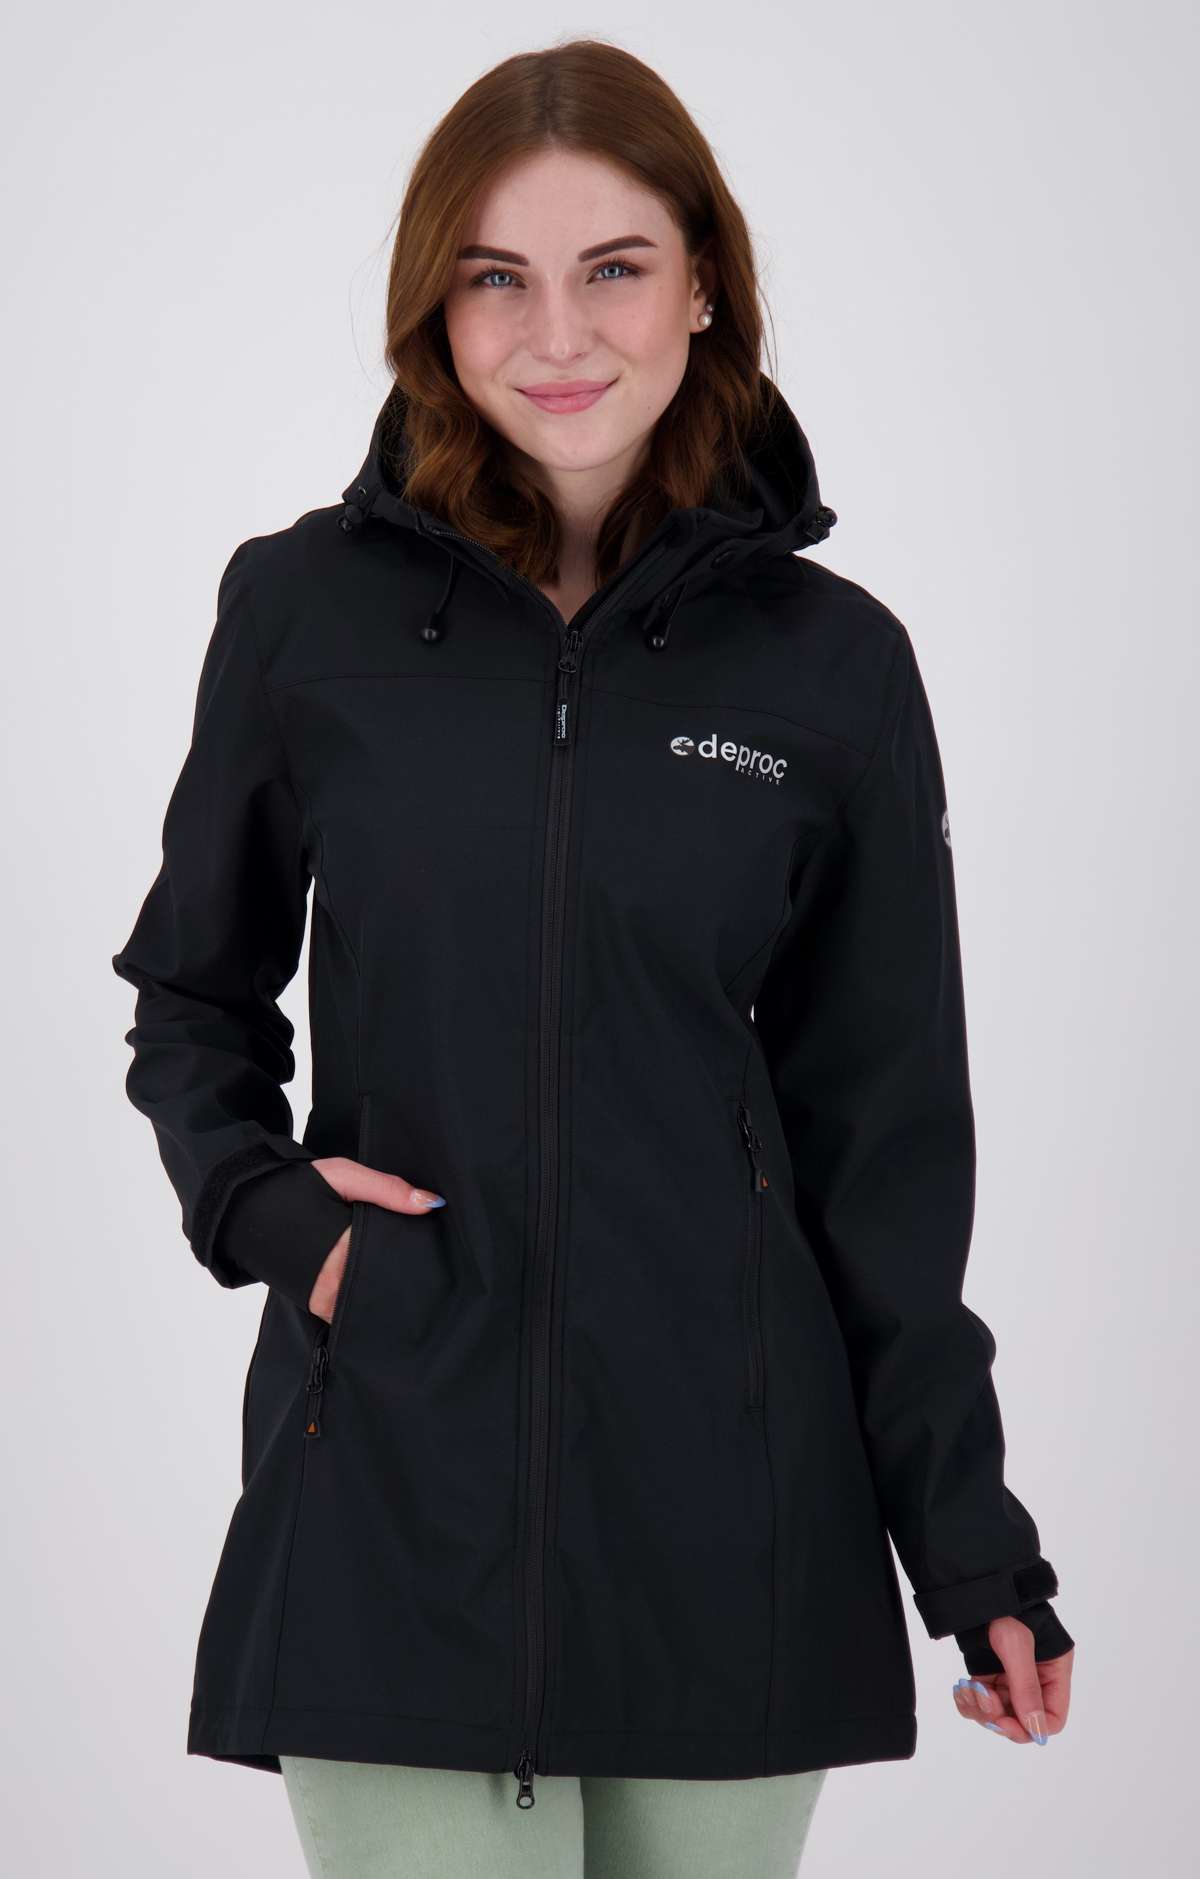 Пальто из софтшелла CAVELL LONG WOMEN CS Длинная куртка также доступна в больших размерах.